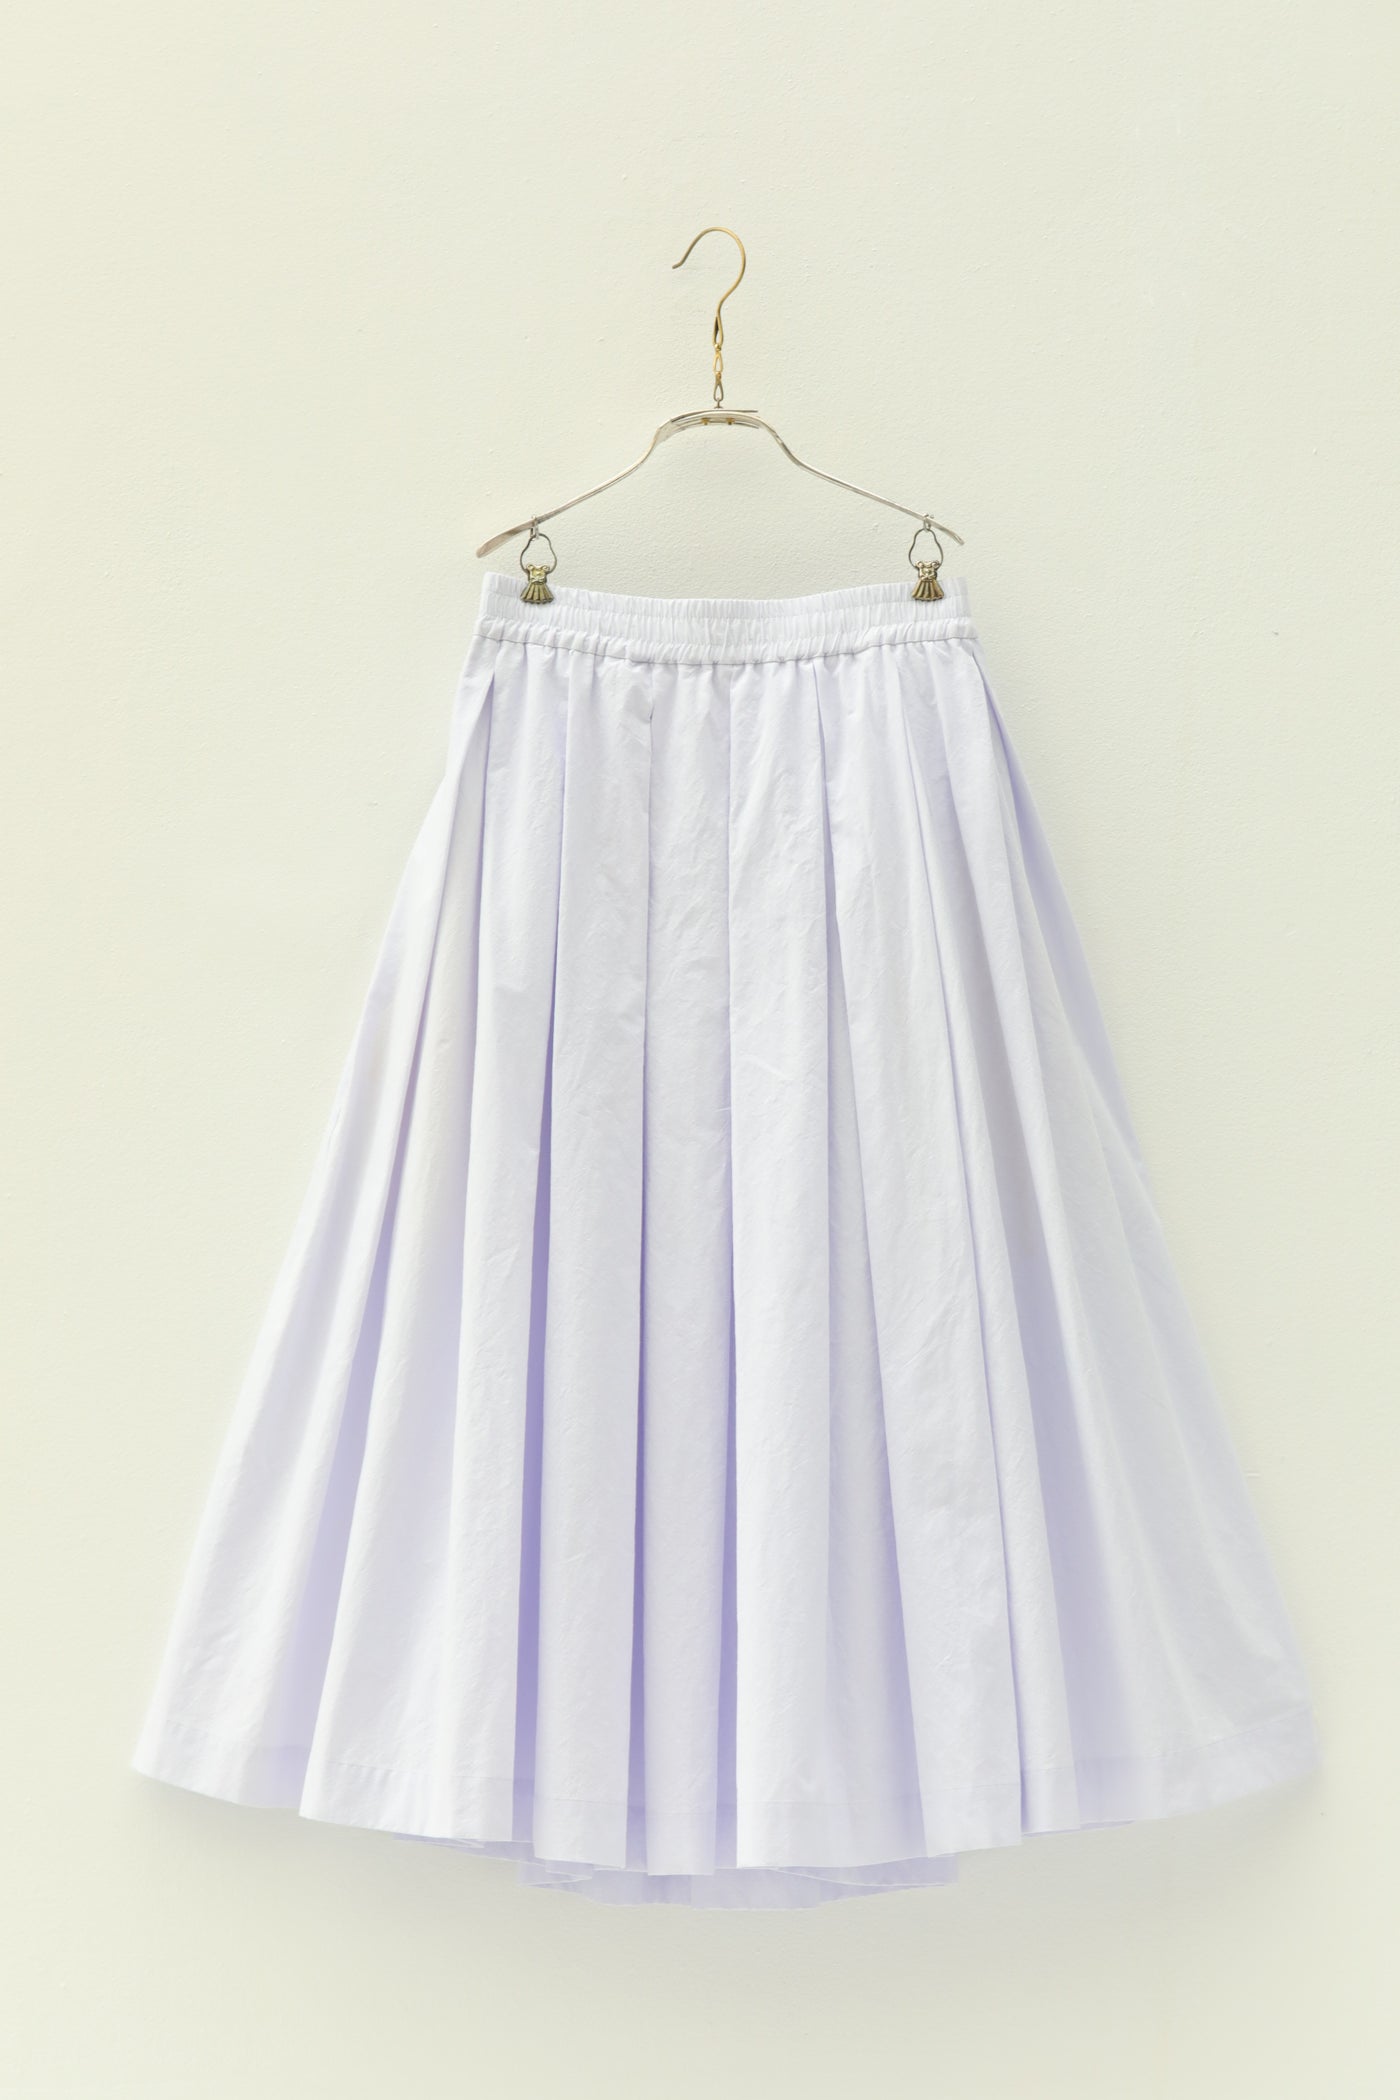 Solange Skirt